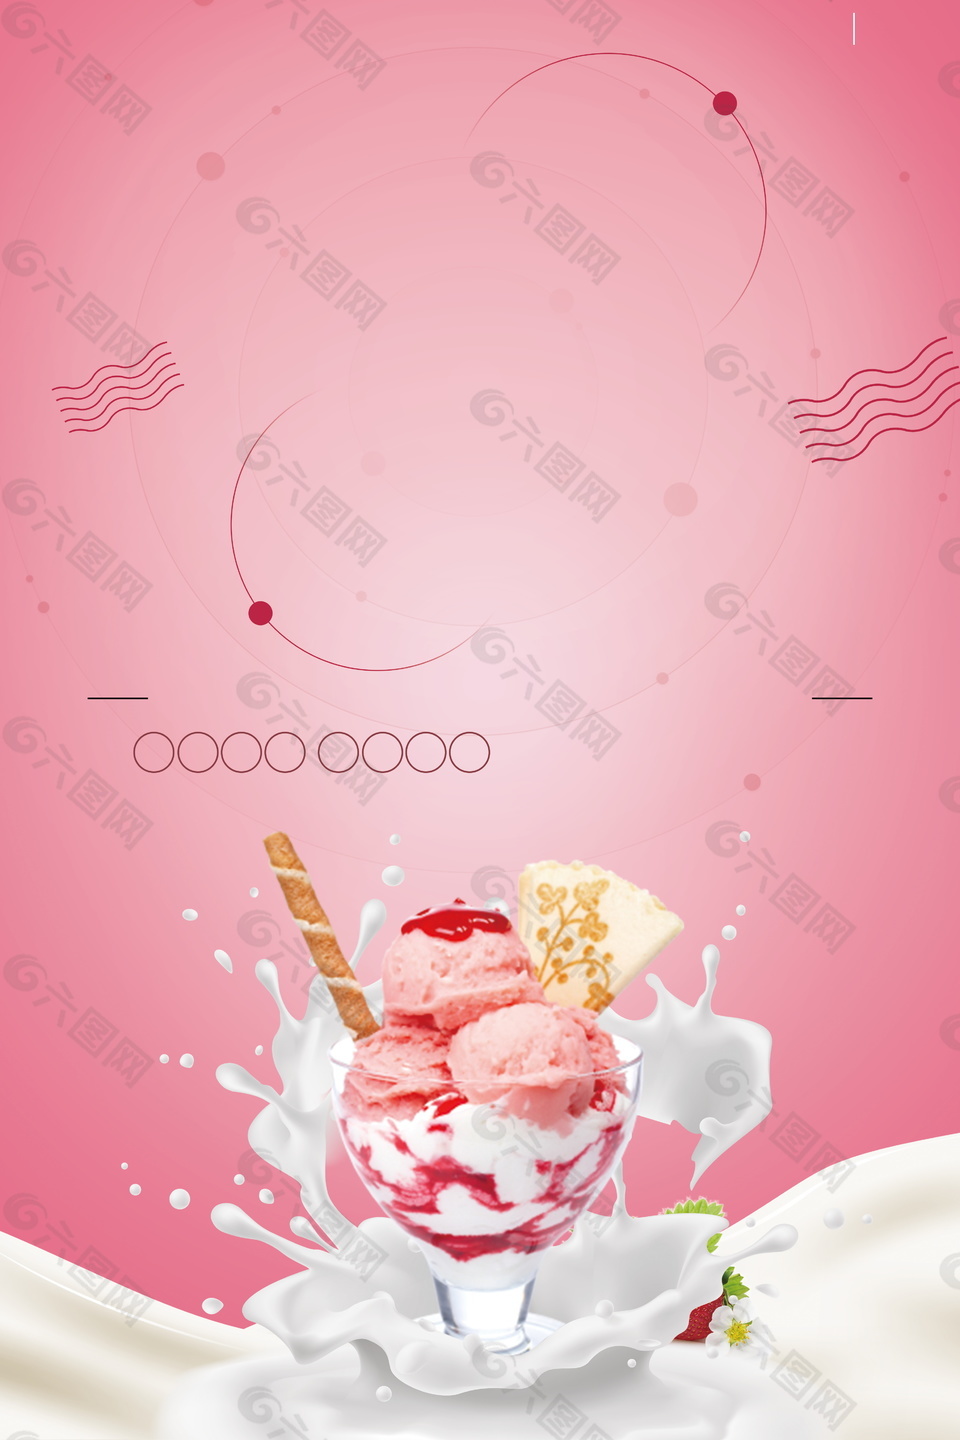 甜美粉色冰淇淋球广告背景